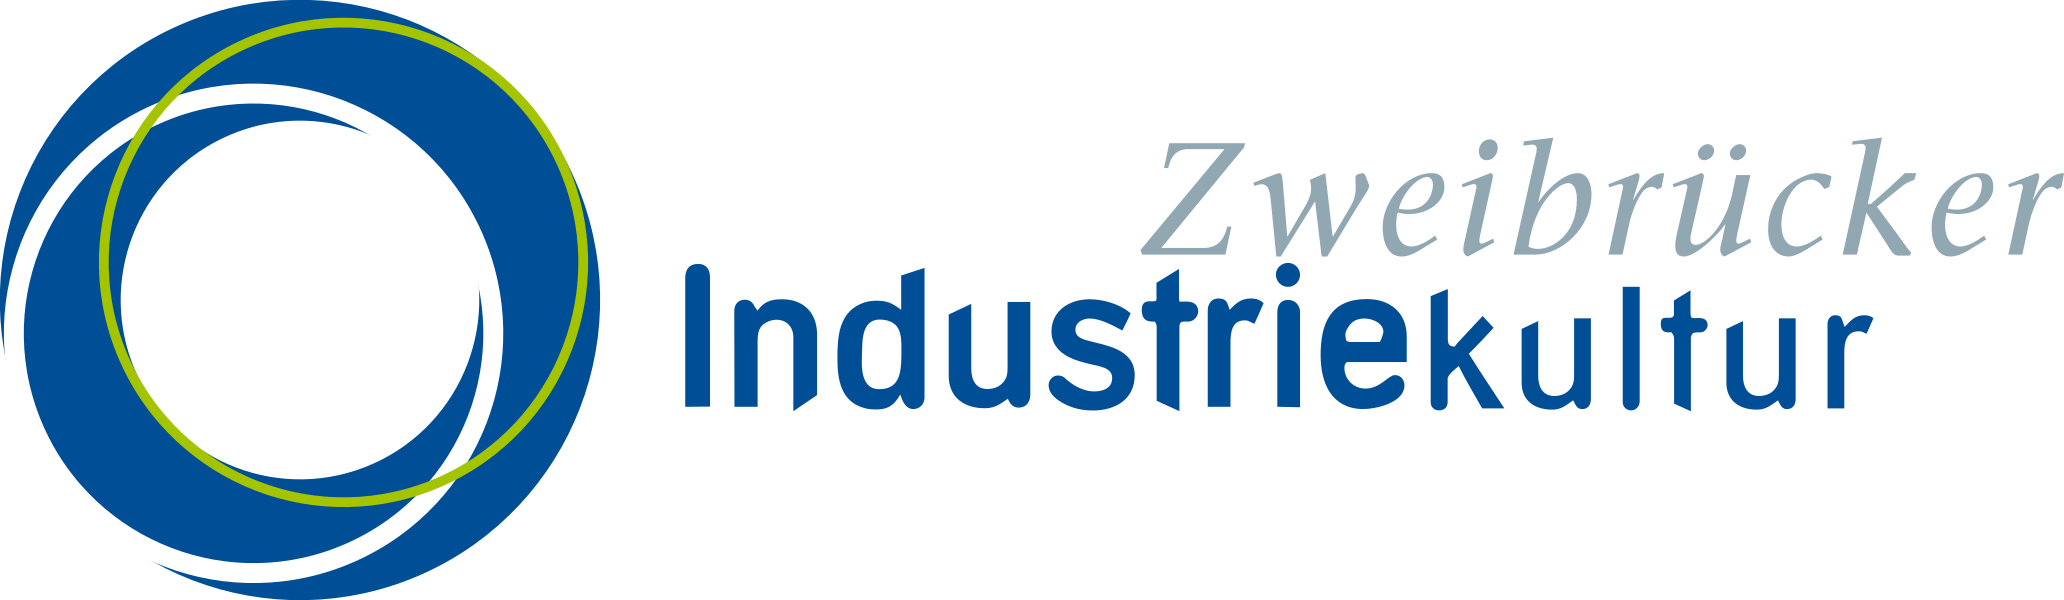 zweibruecker-industriekultur.de 